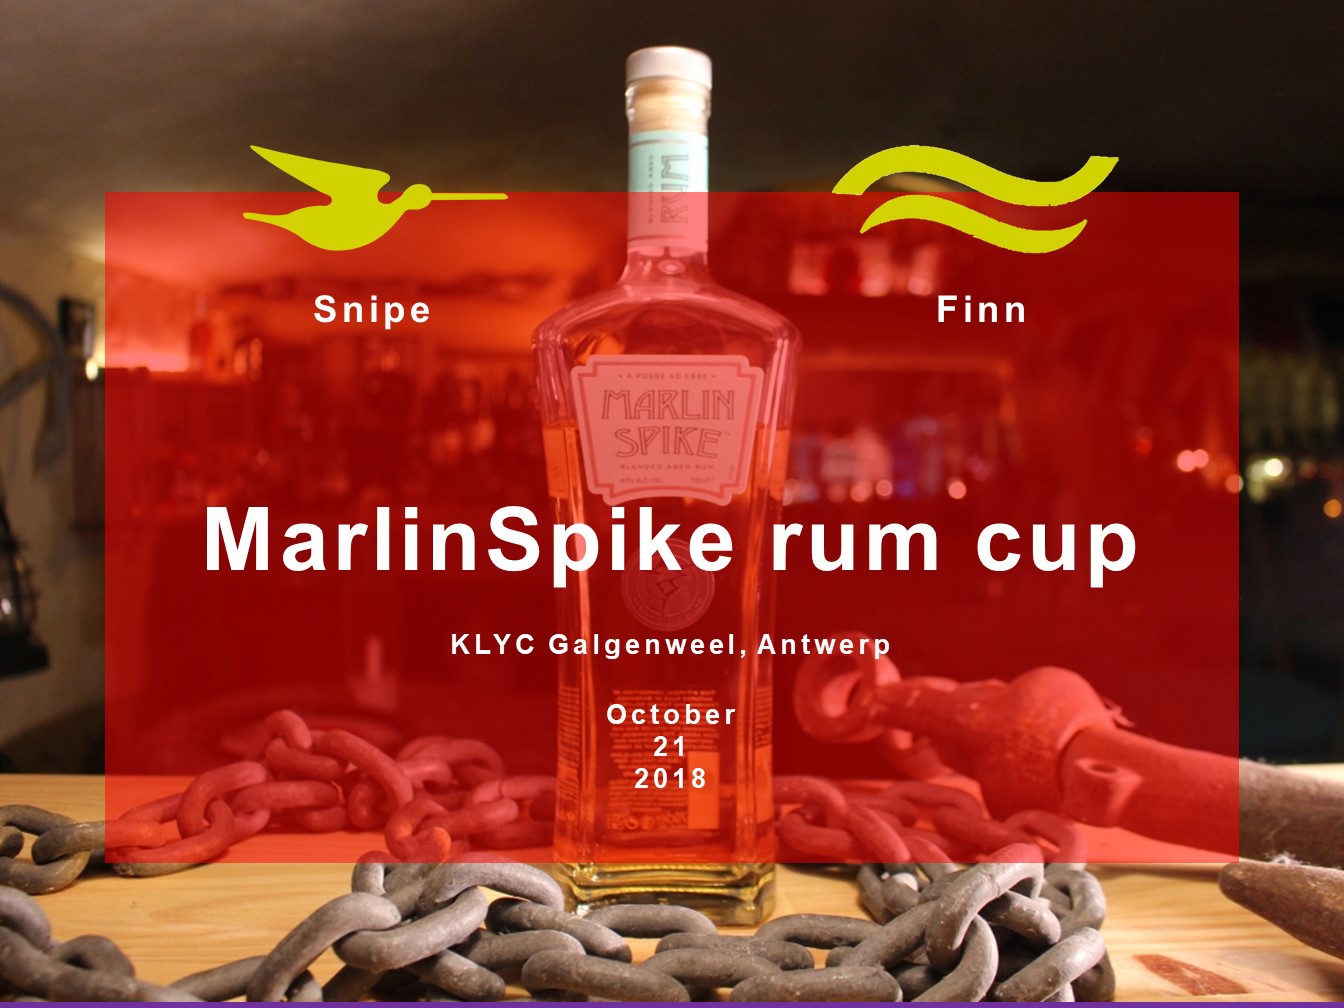 MarlinSpike rum cup 2018 Image